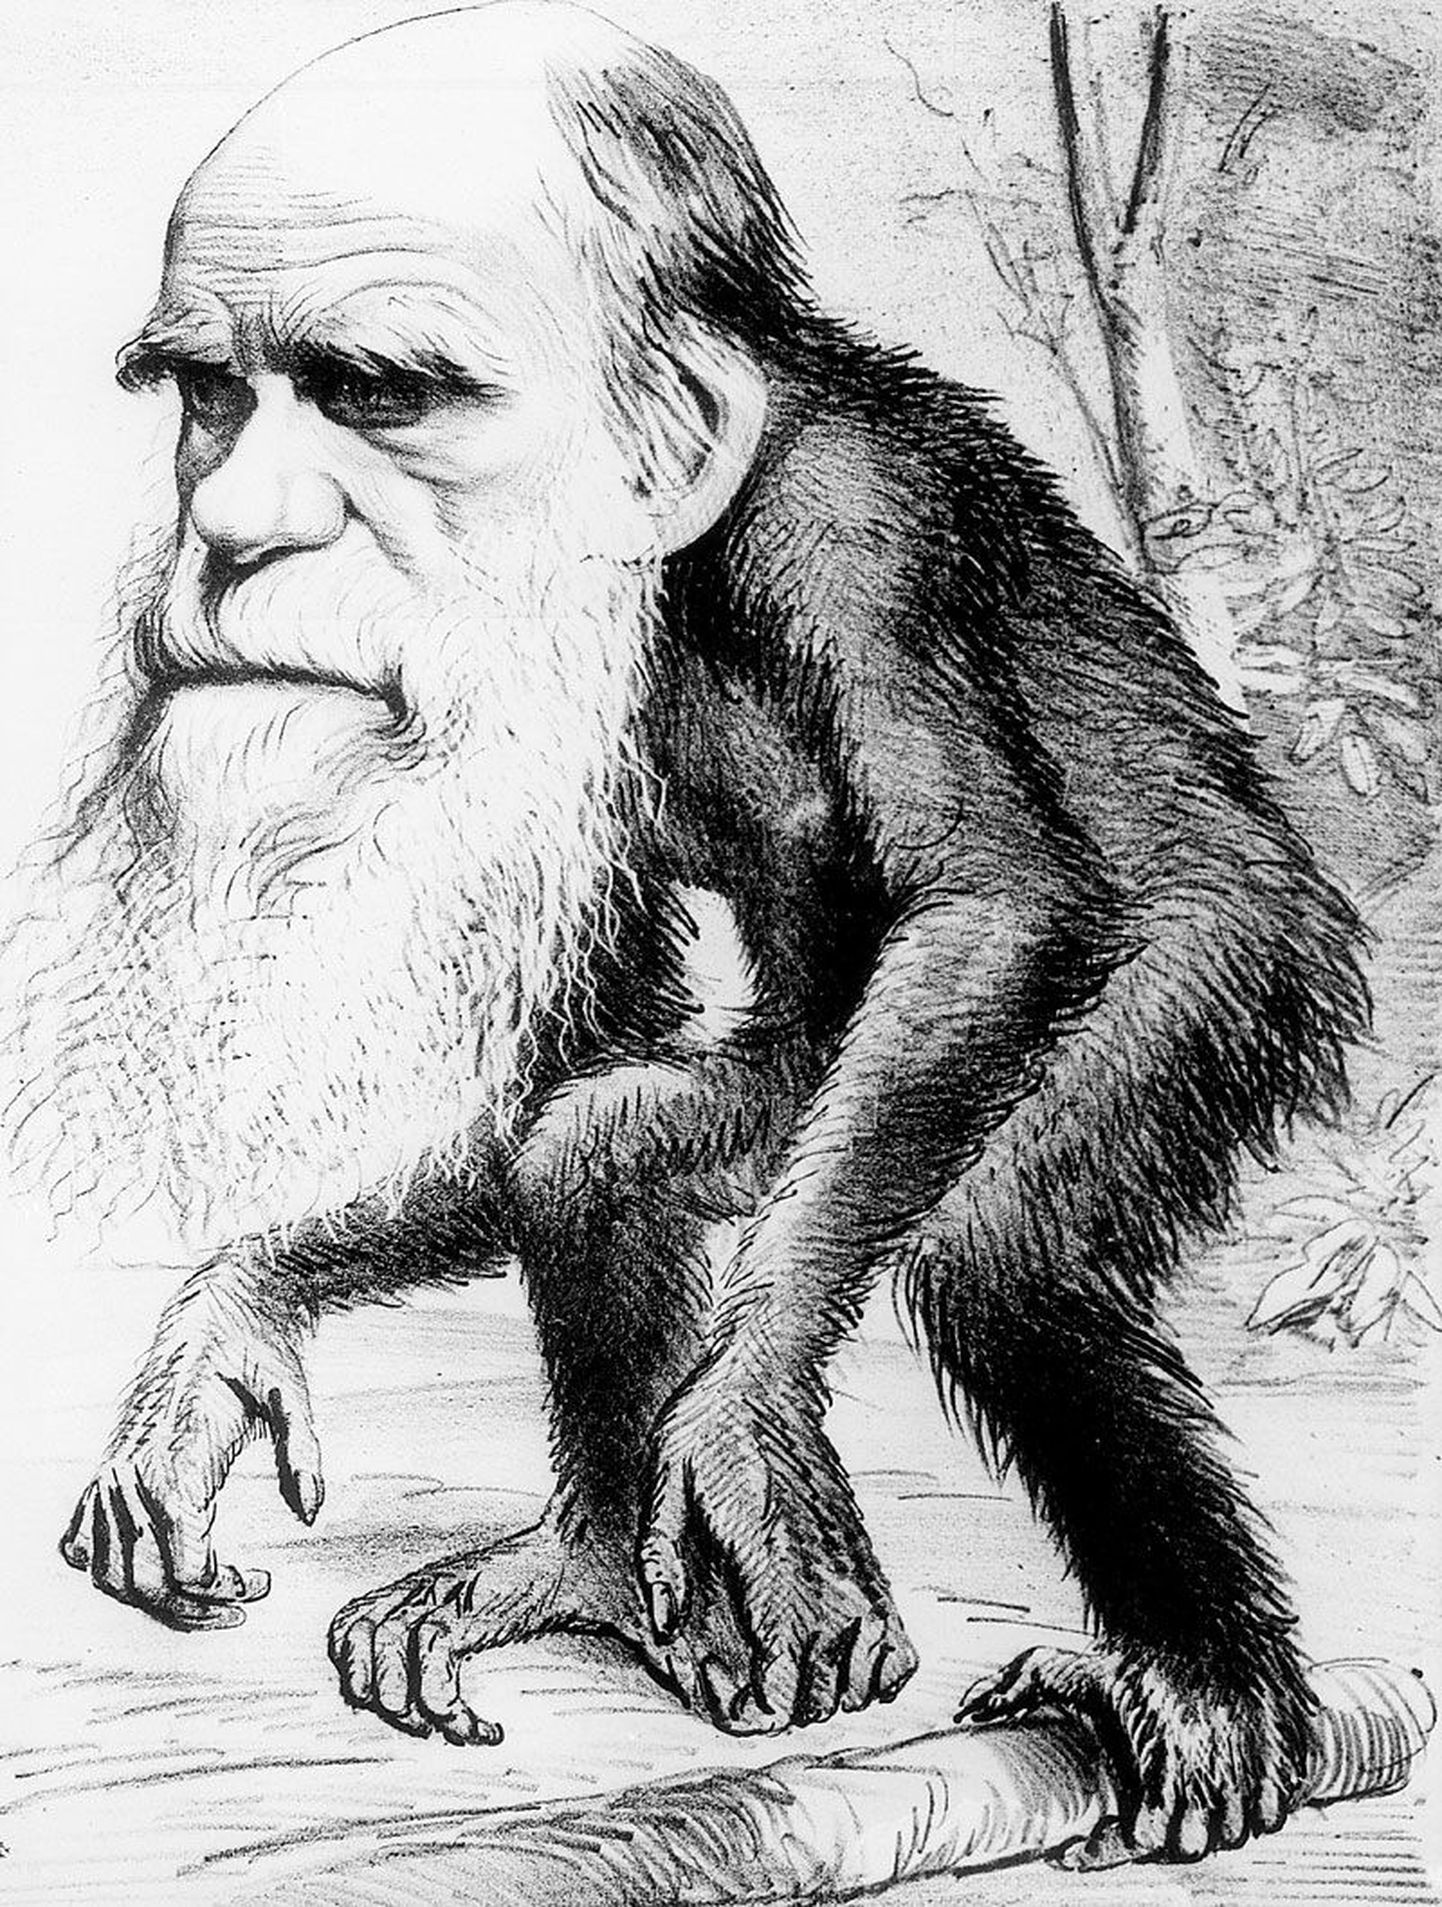 Charles Darwin, kes õppis Cambridge’i Ülikoolis usuteadust, loobus piibellikust loomisteooriast ümbermaailmareisil, kus tegi tähelepanekuid liikide tekkimise kohta. Mõte, et inimene ei ole loodud Jumala näo järgi, vaid tal on hoopis ahviga ühine esivanem, ei olnud toona kõigi jaoks vastuvõetav ega ole seda ka veel tänapäeval.